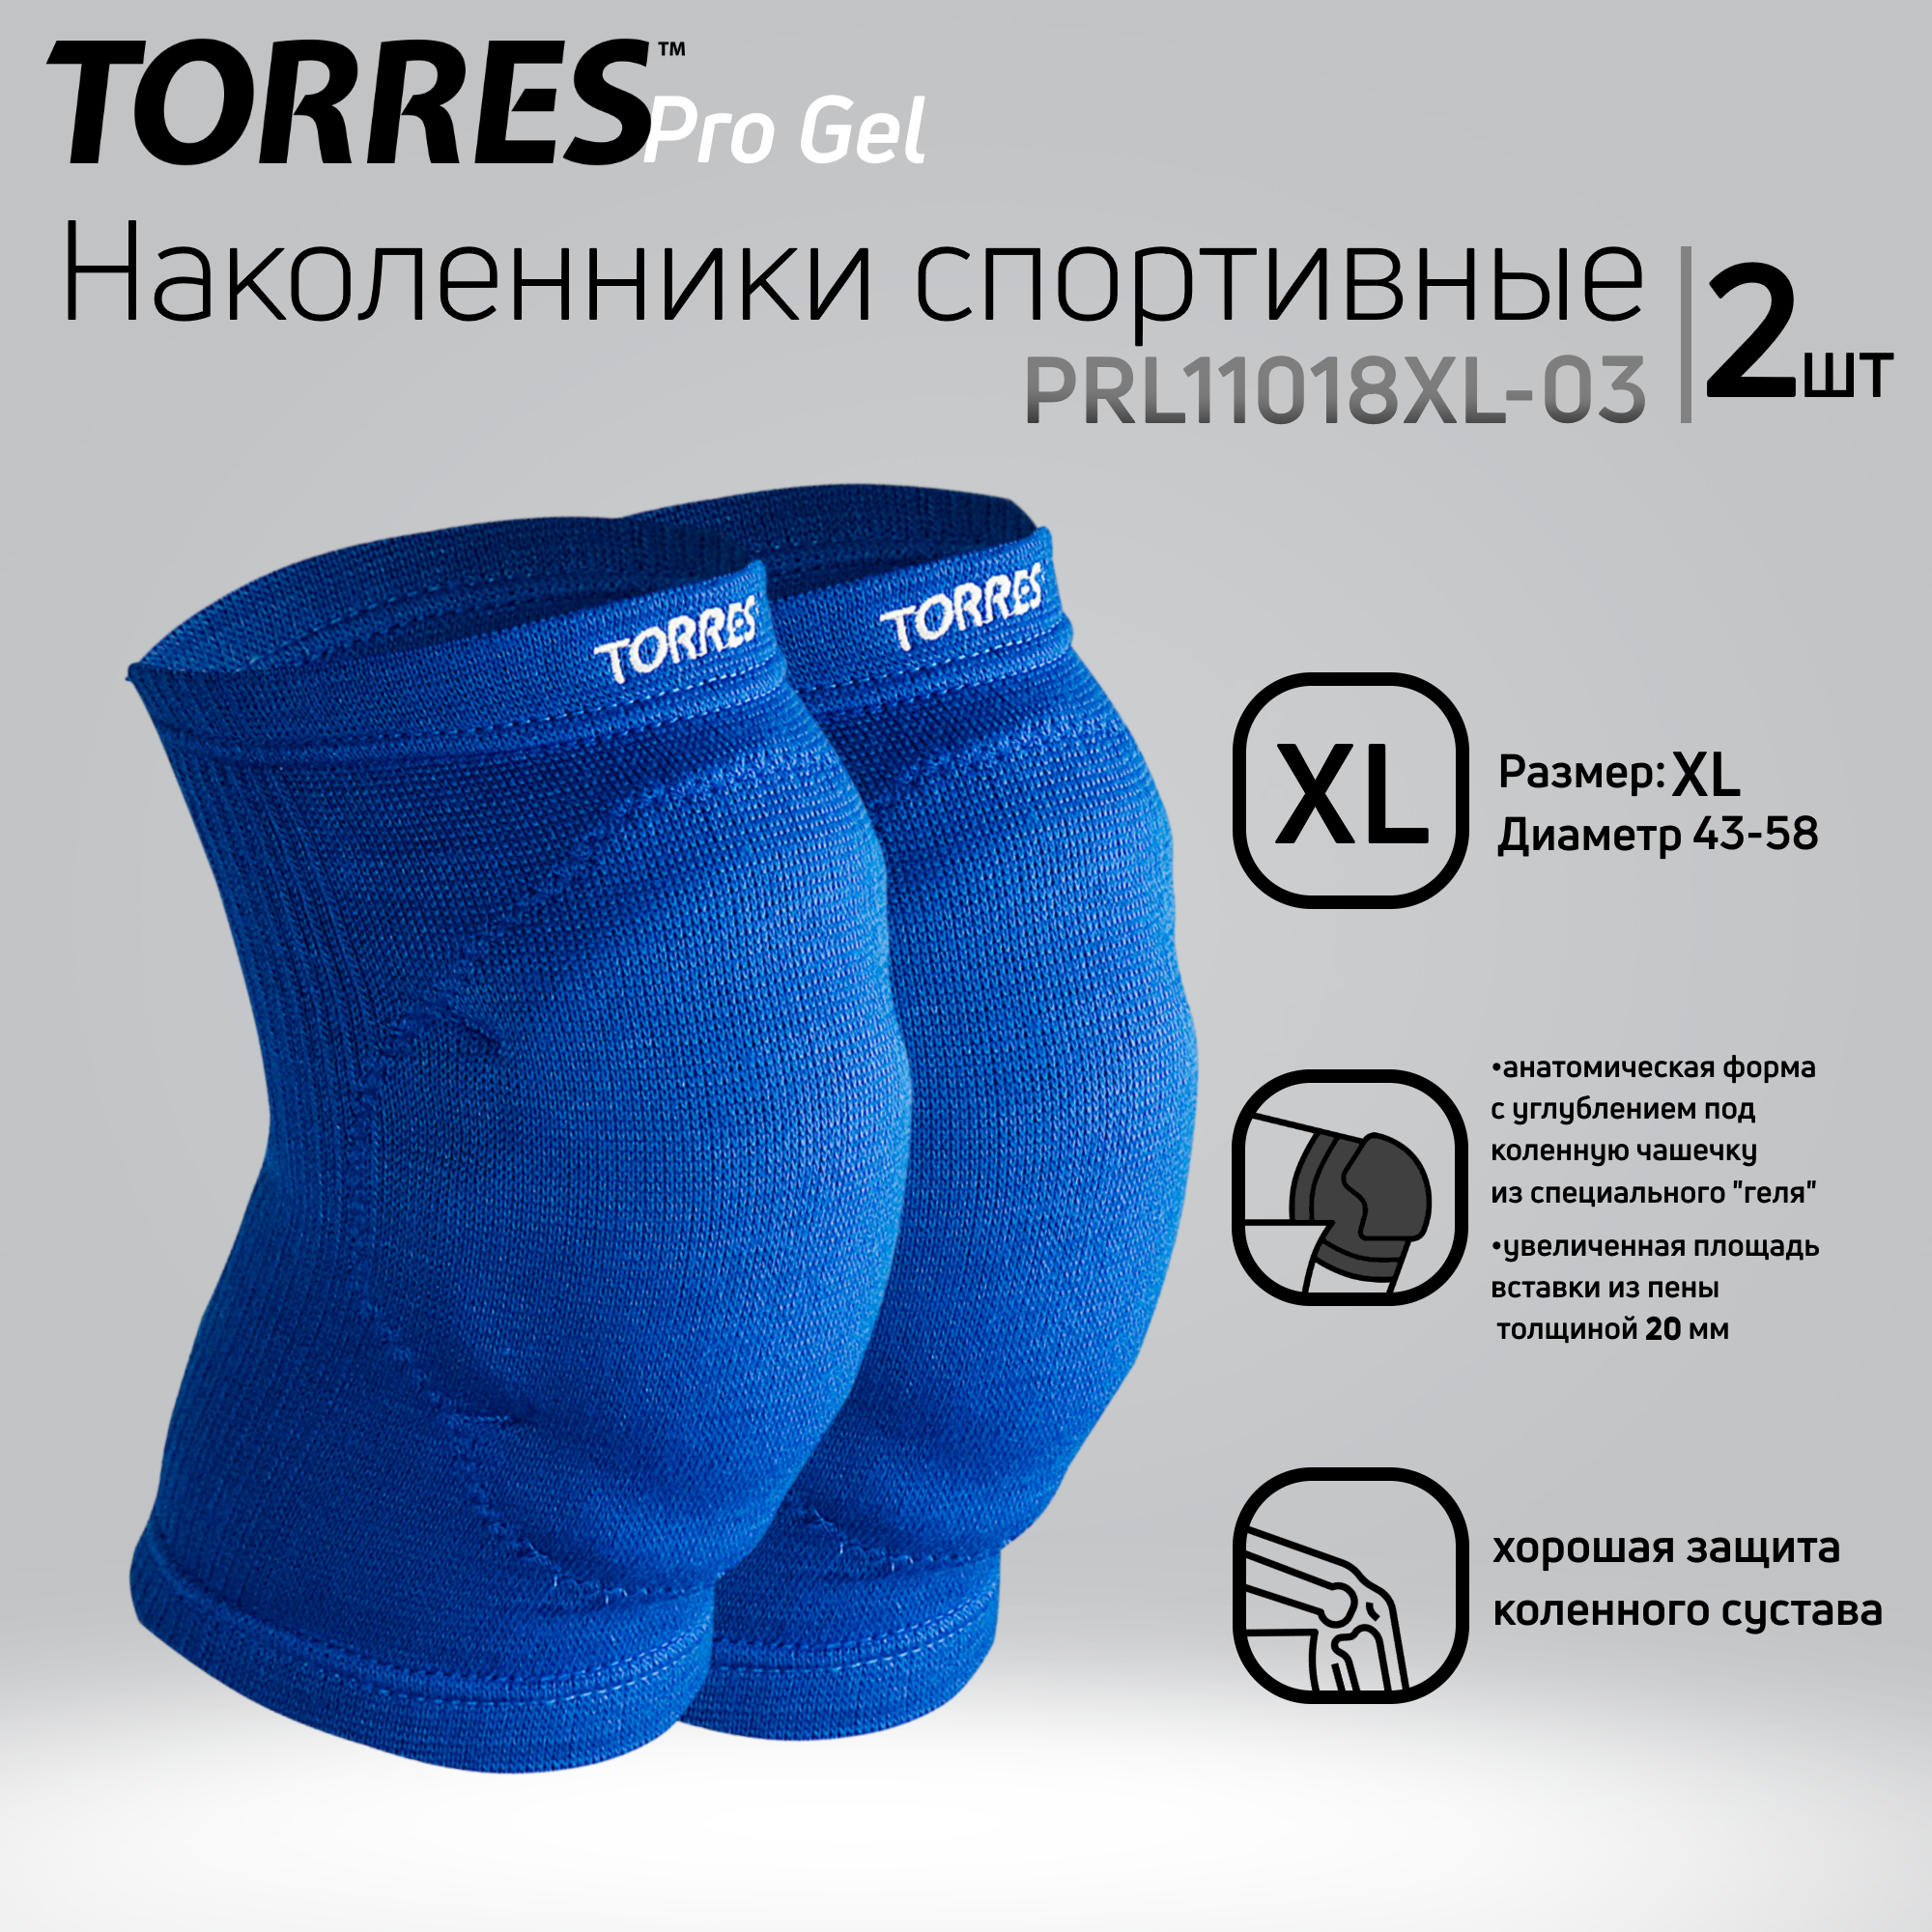 Наколенники спортивные TORRES Pro Gel PRL11018L-03, размер L, синие